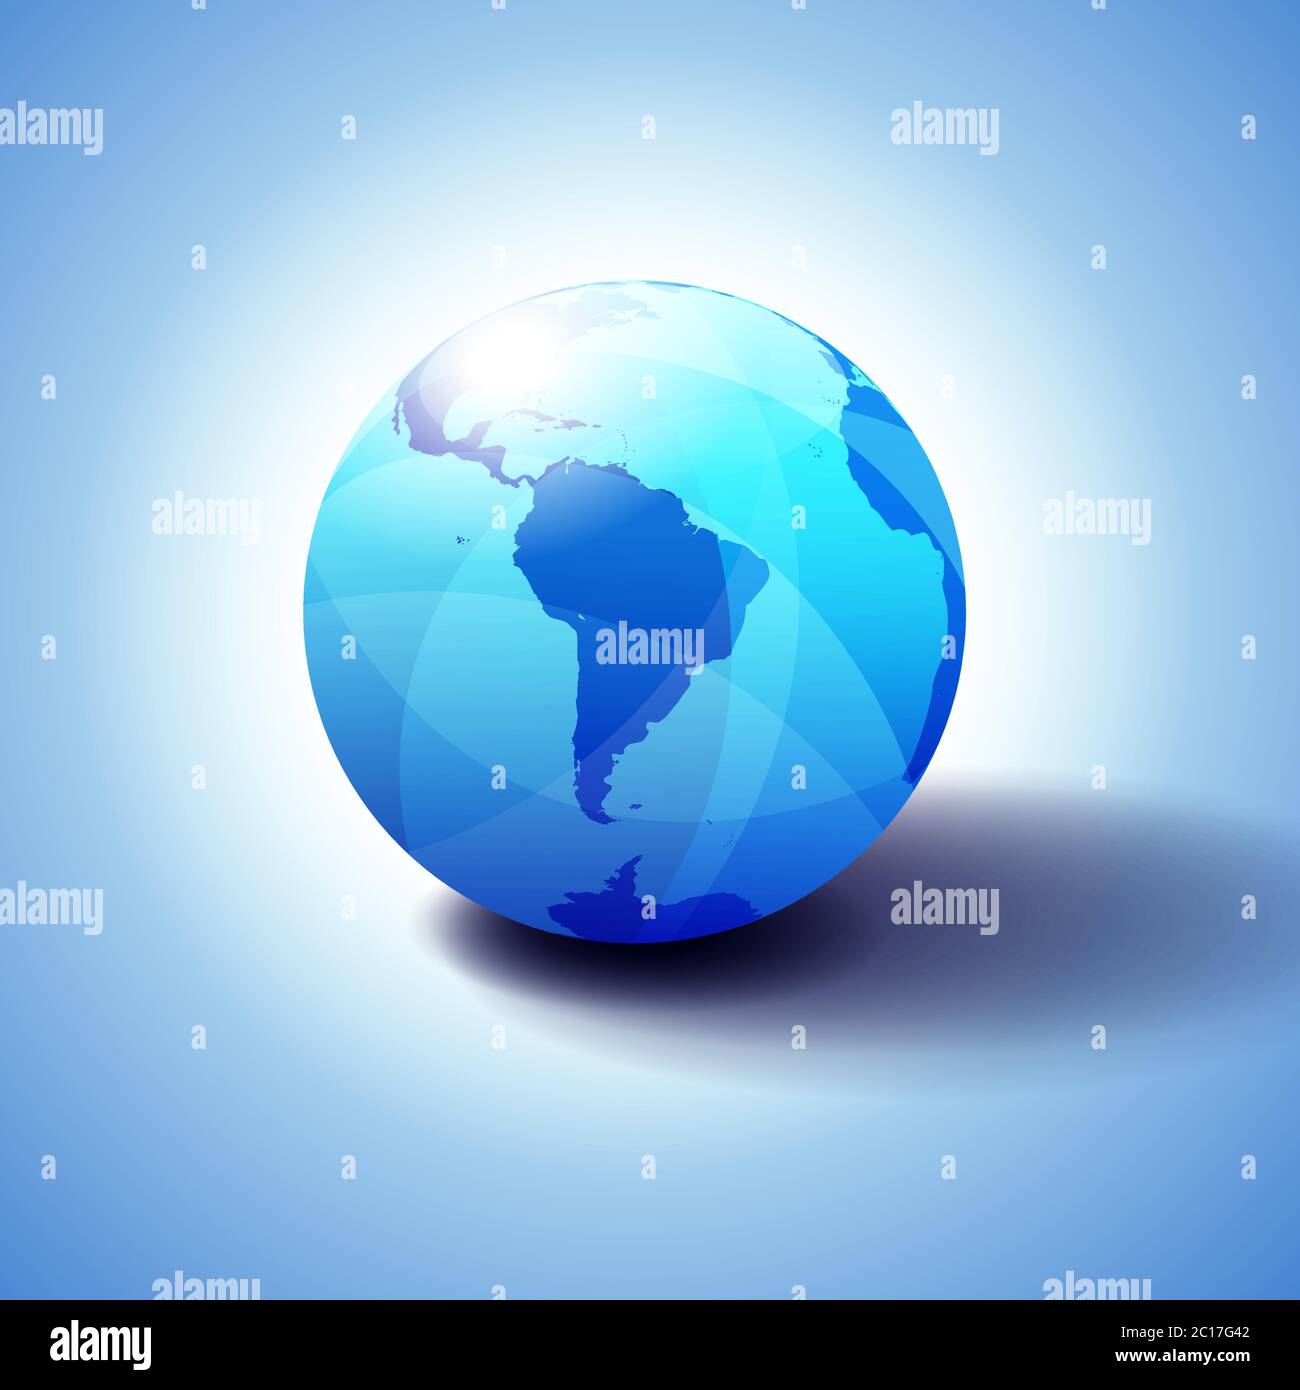 Sud America sfondo con icona Globe illustrazione 3D, lucida, sfera lucida con mappa globale in blu sottile per un aspetto trasparente Illustrazione Vettoriale